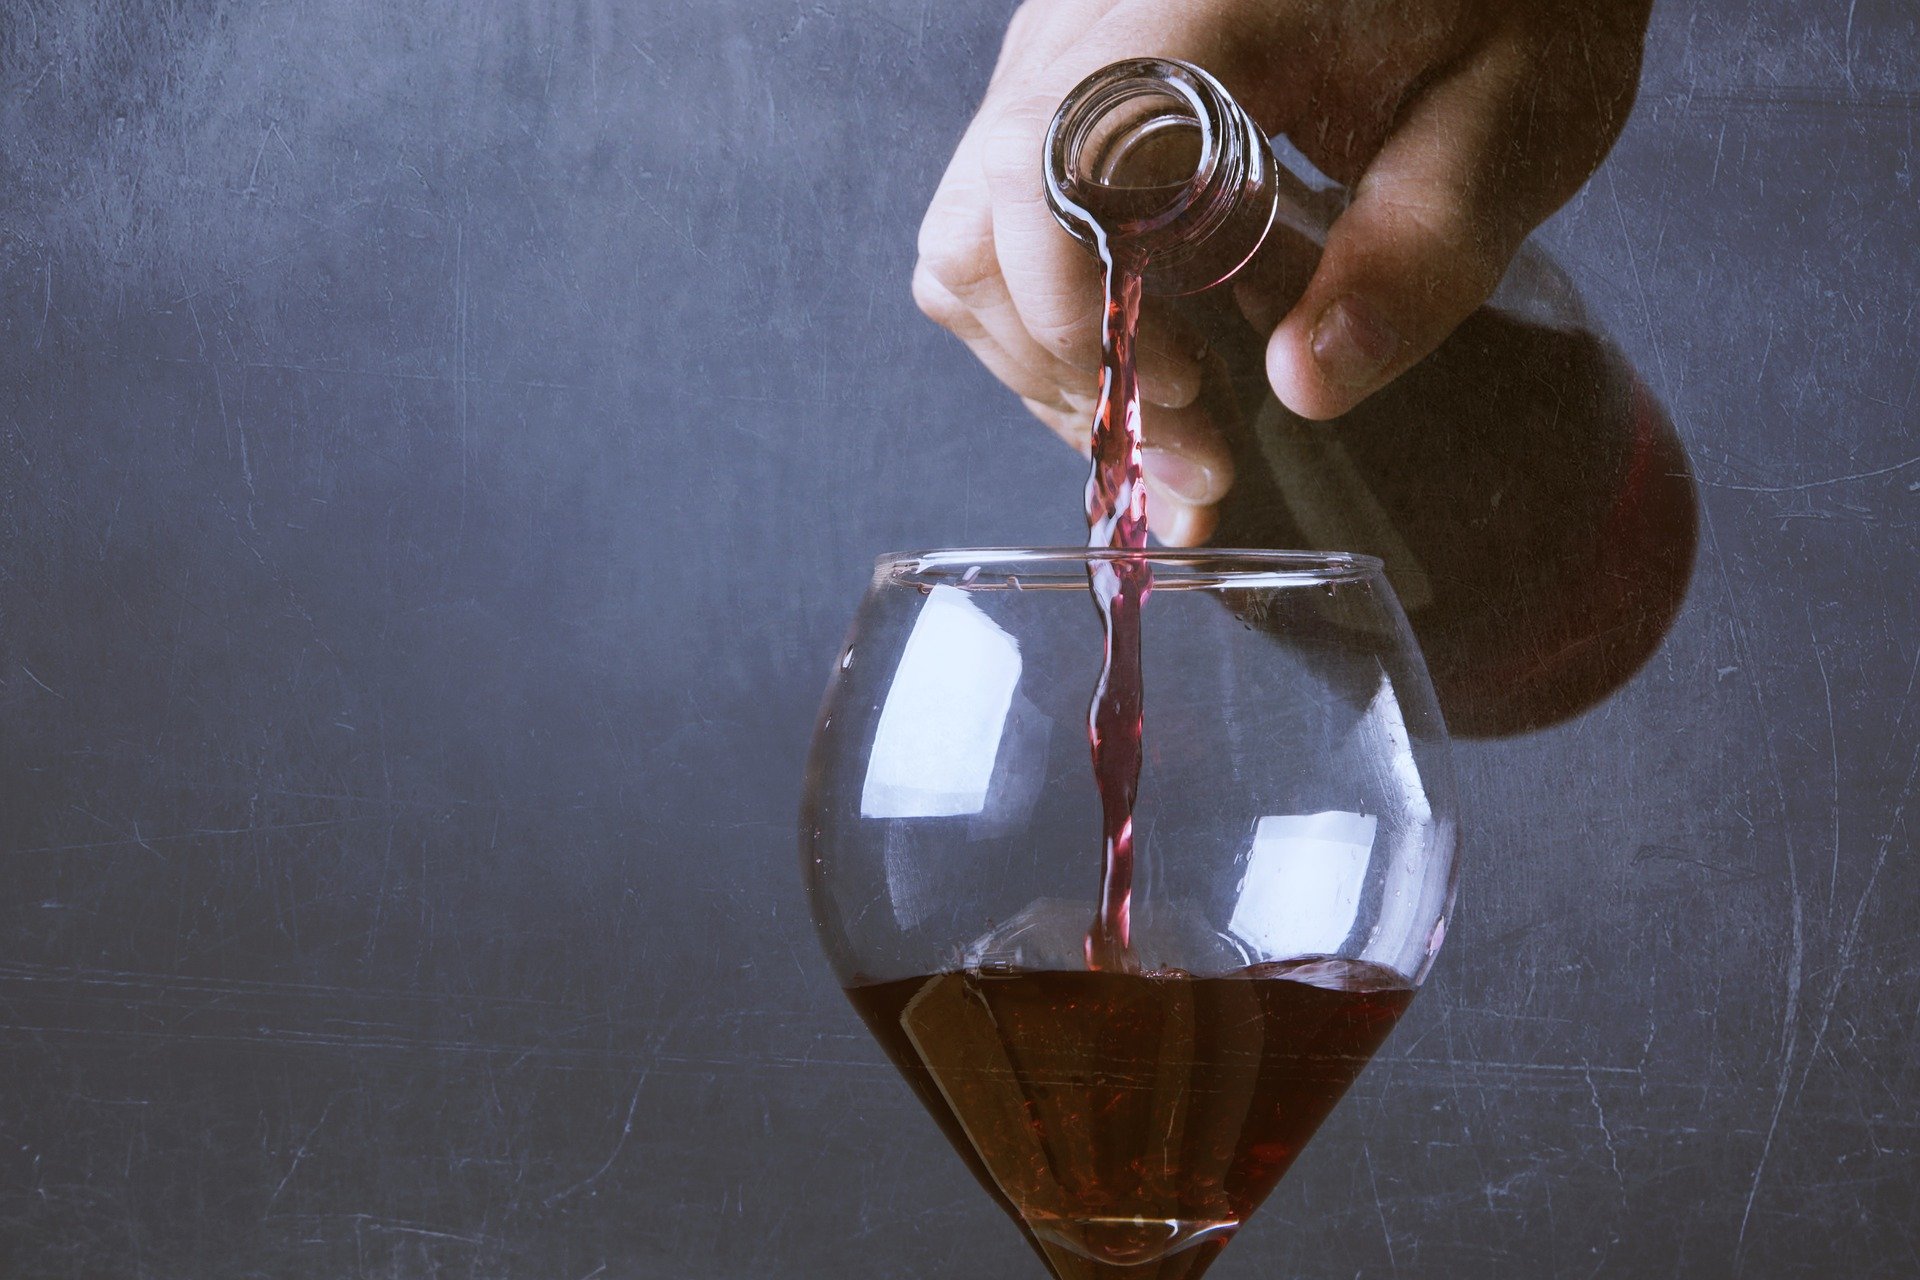 ‘Pasión por el vino’: volta al món a través de les vinyes i els vins